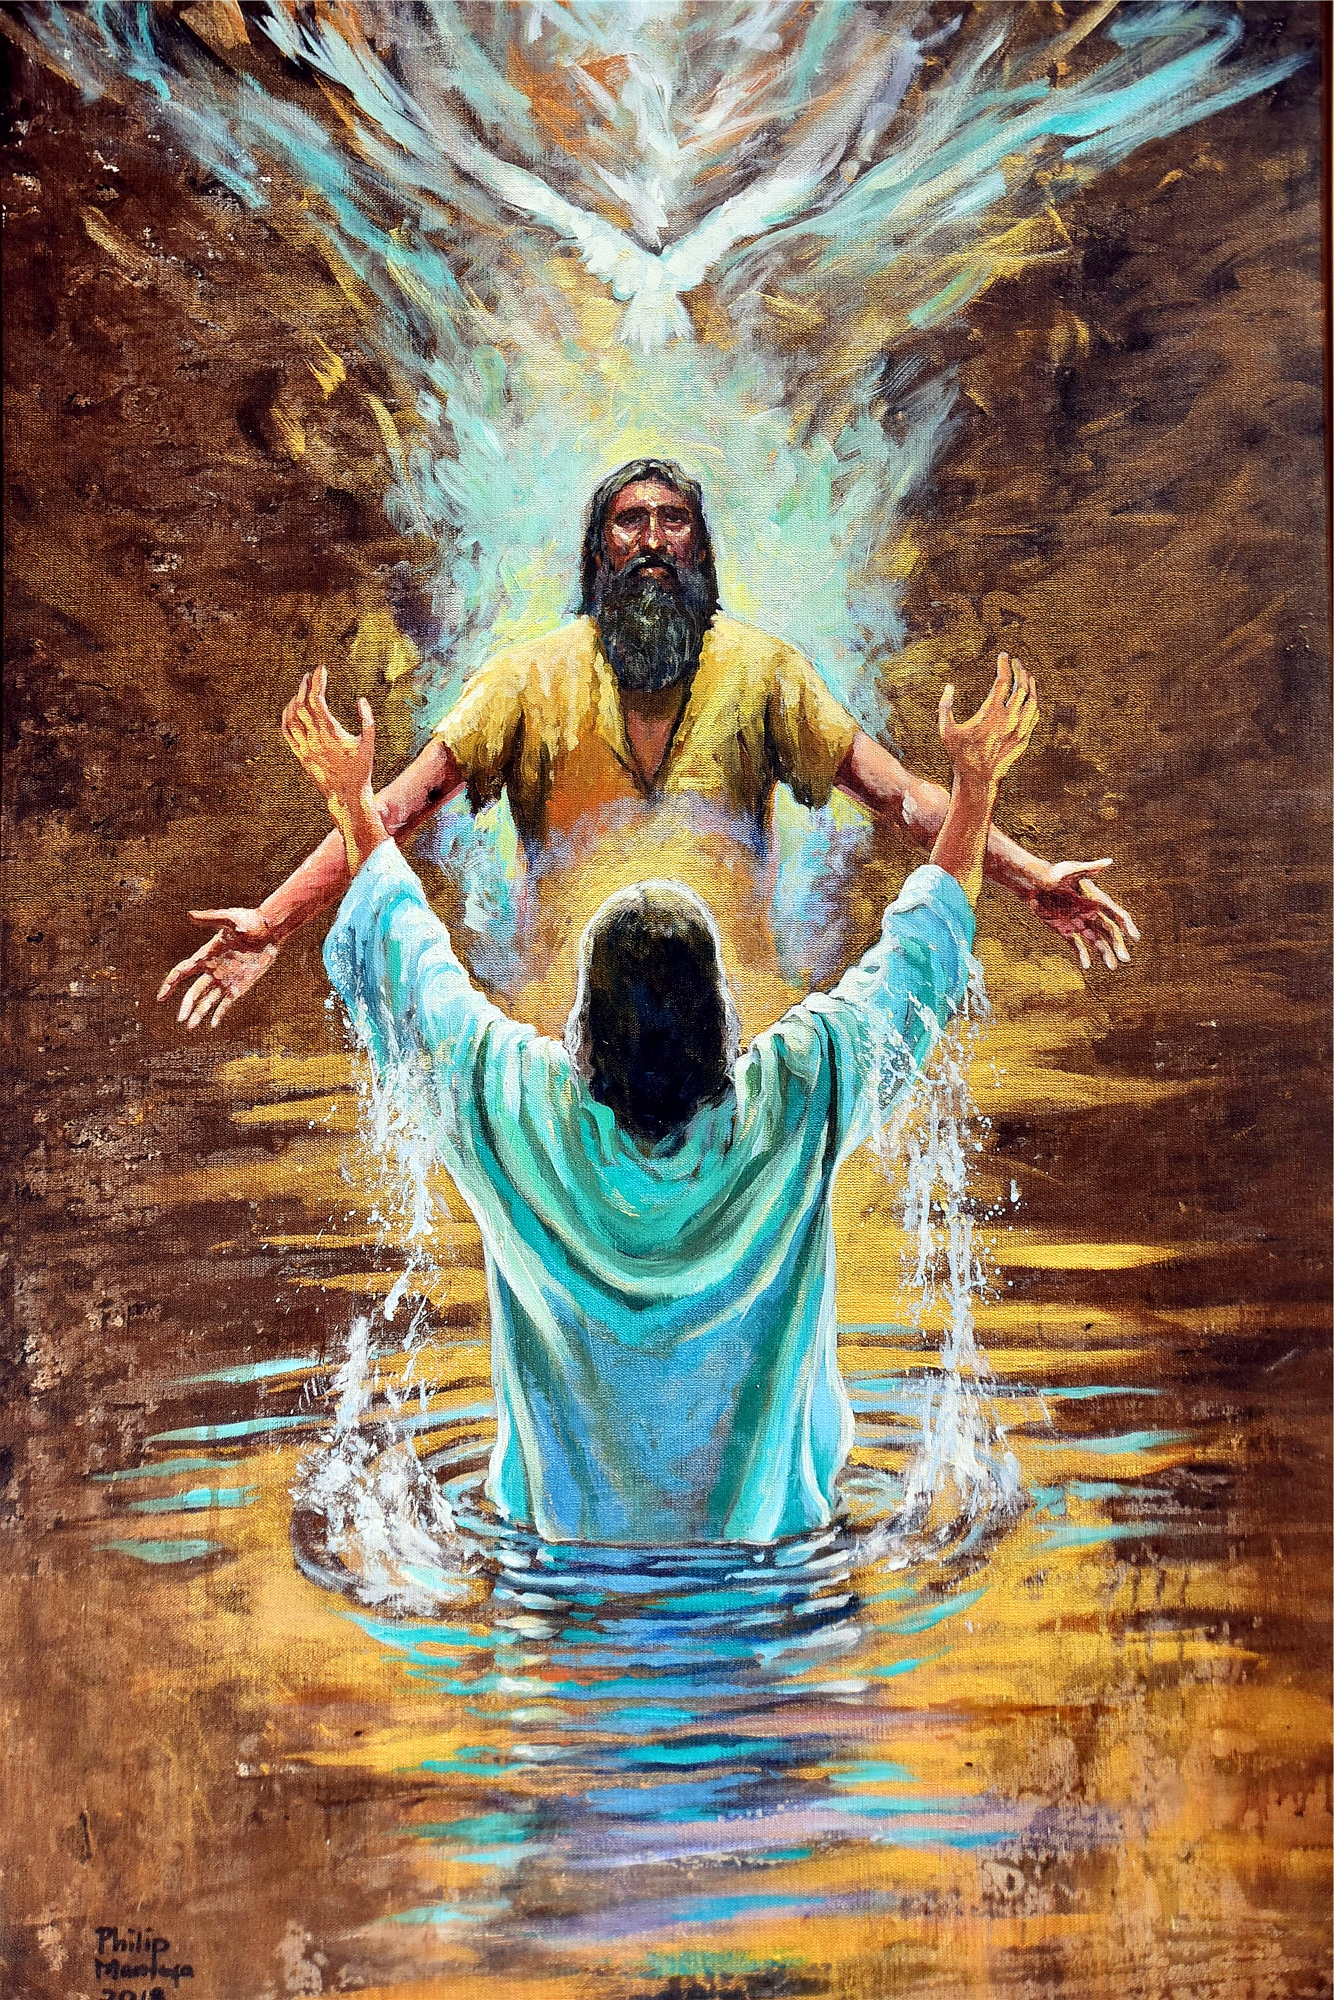 吃过午餐之后,我们来到相传当年耶稣在约旦河受洗的地方